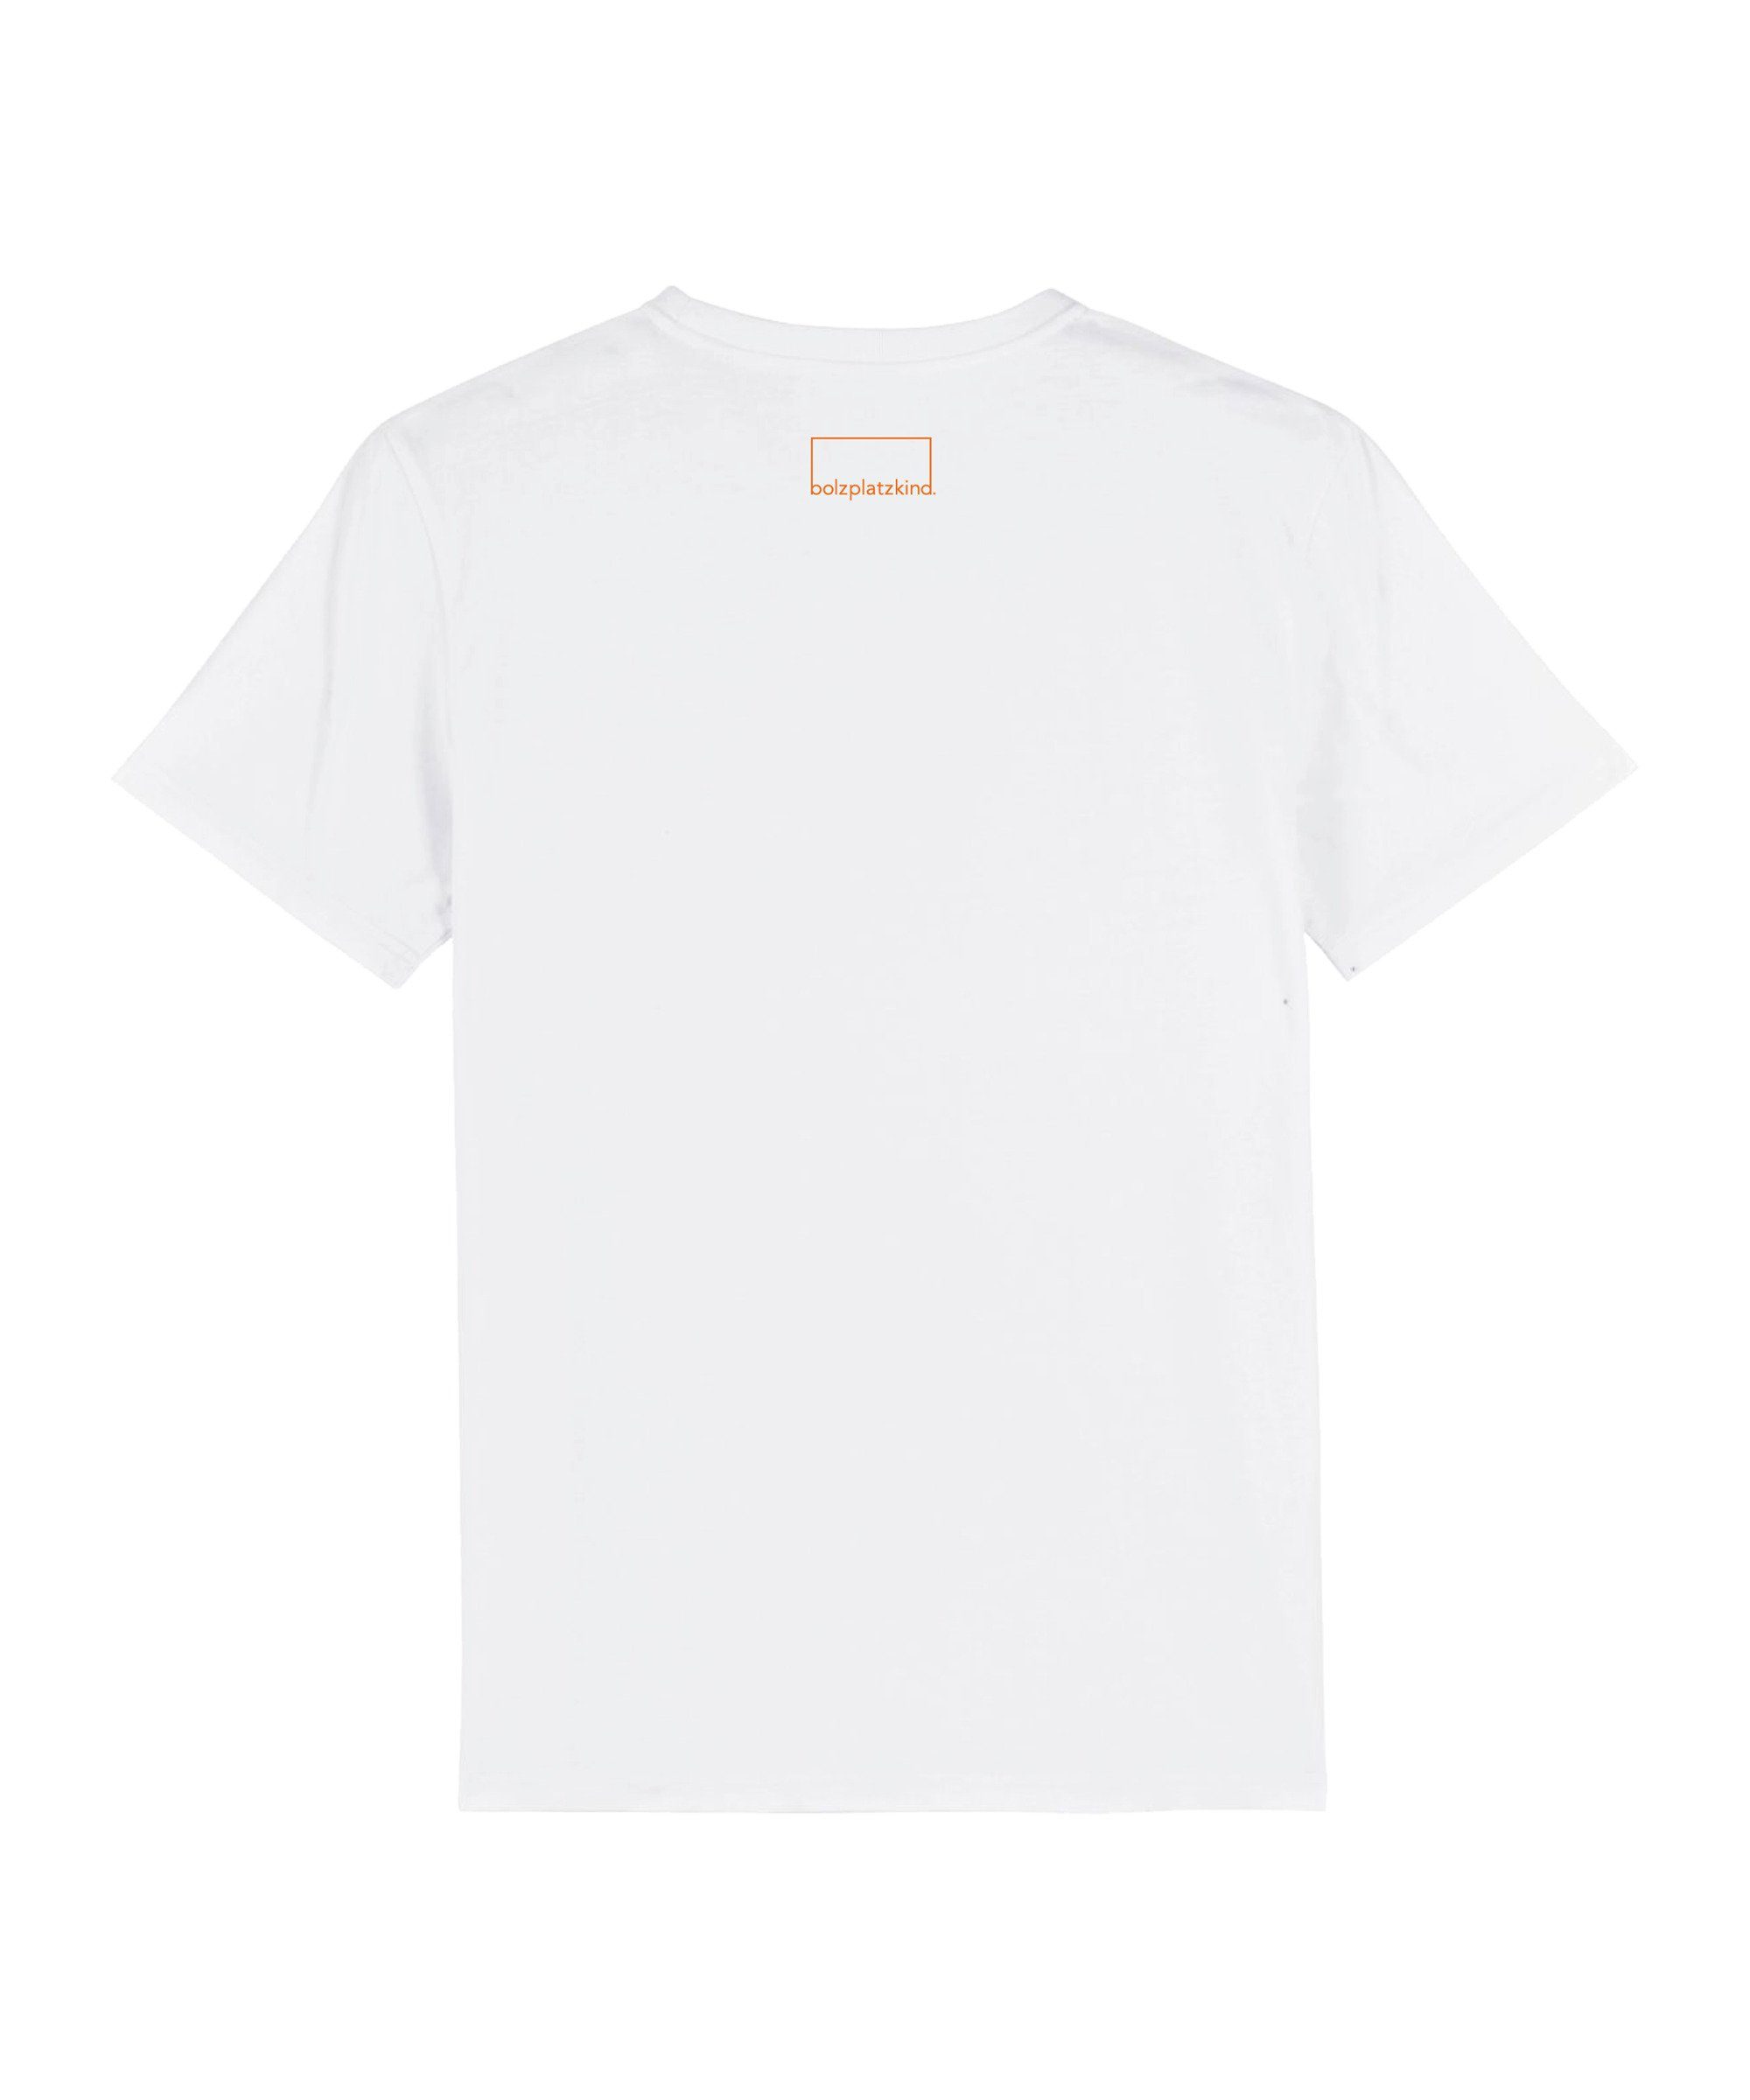 "Free" Nachhaltiges T-Shirt Produkt Bolzplatzkind T-Shirt weissorange